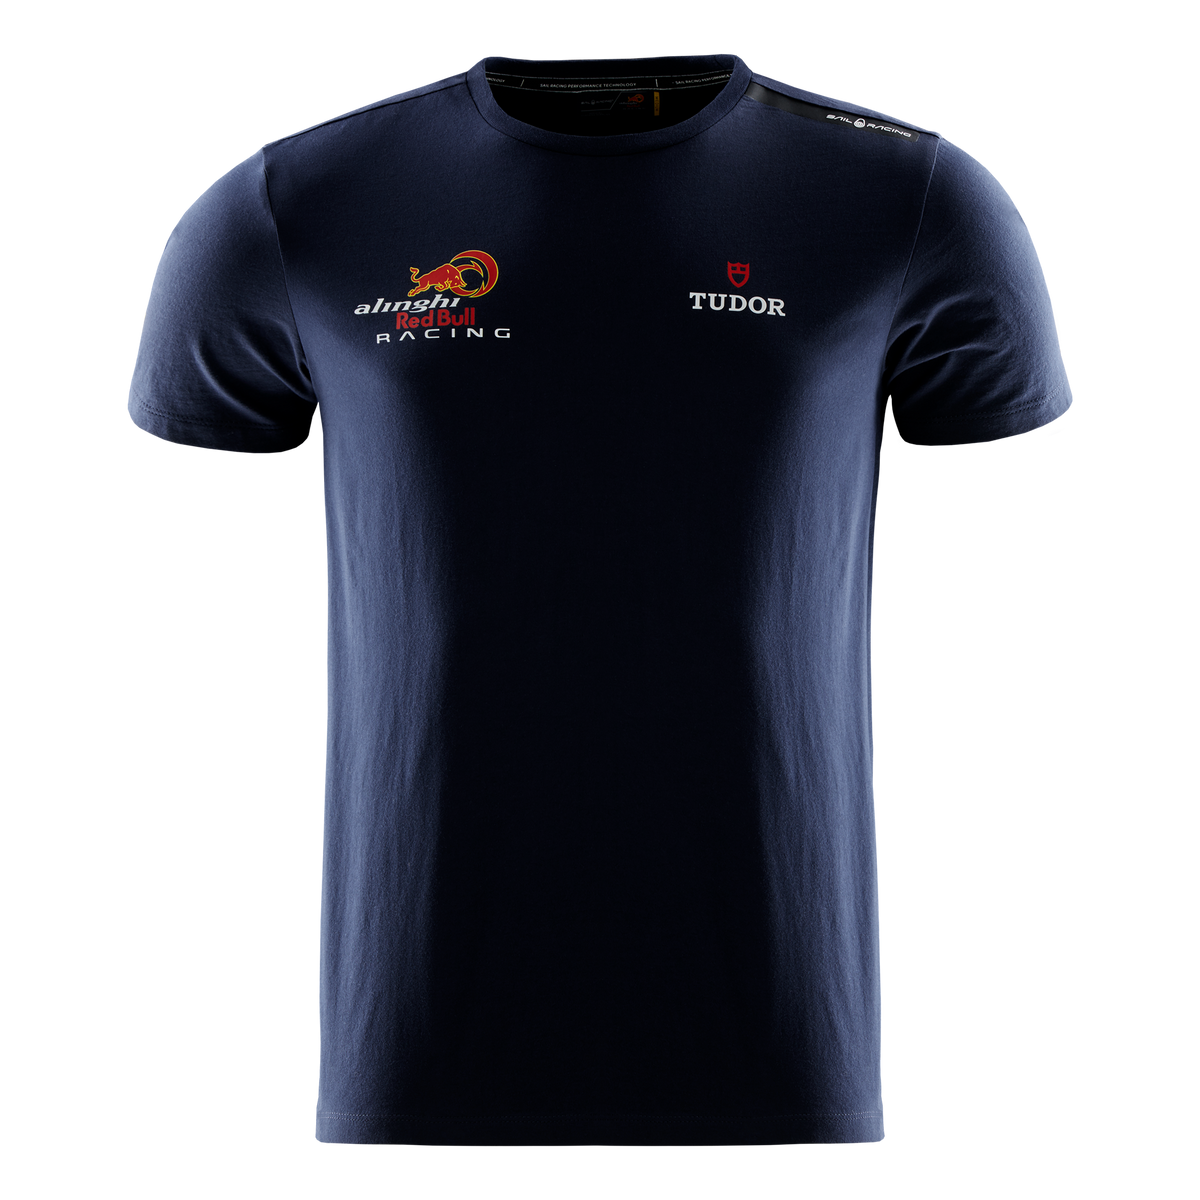 Sail Racing Alinghi Red Bull Racing T-Shirt – 37th Americas Cup Store